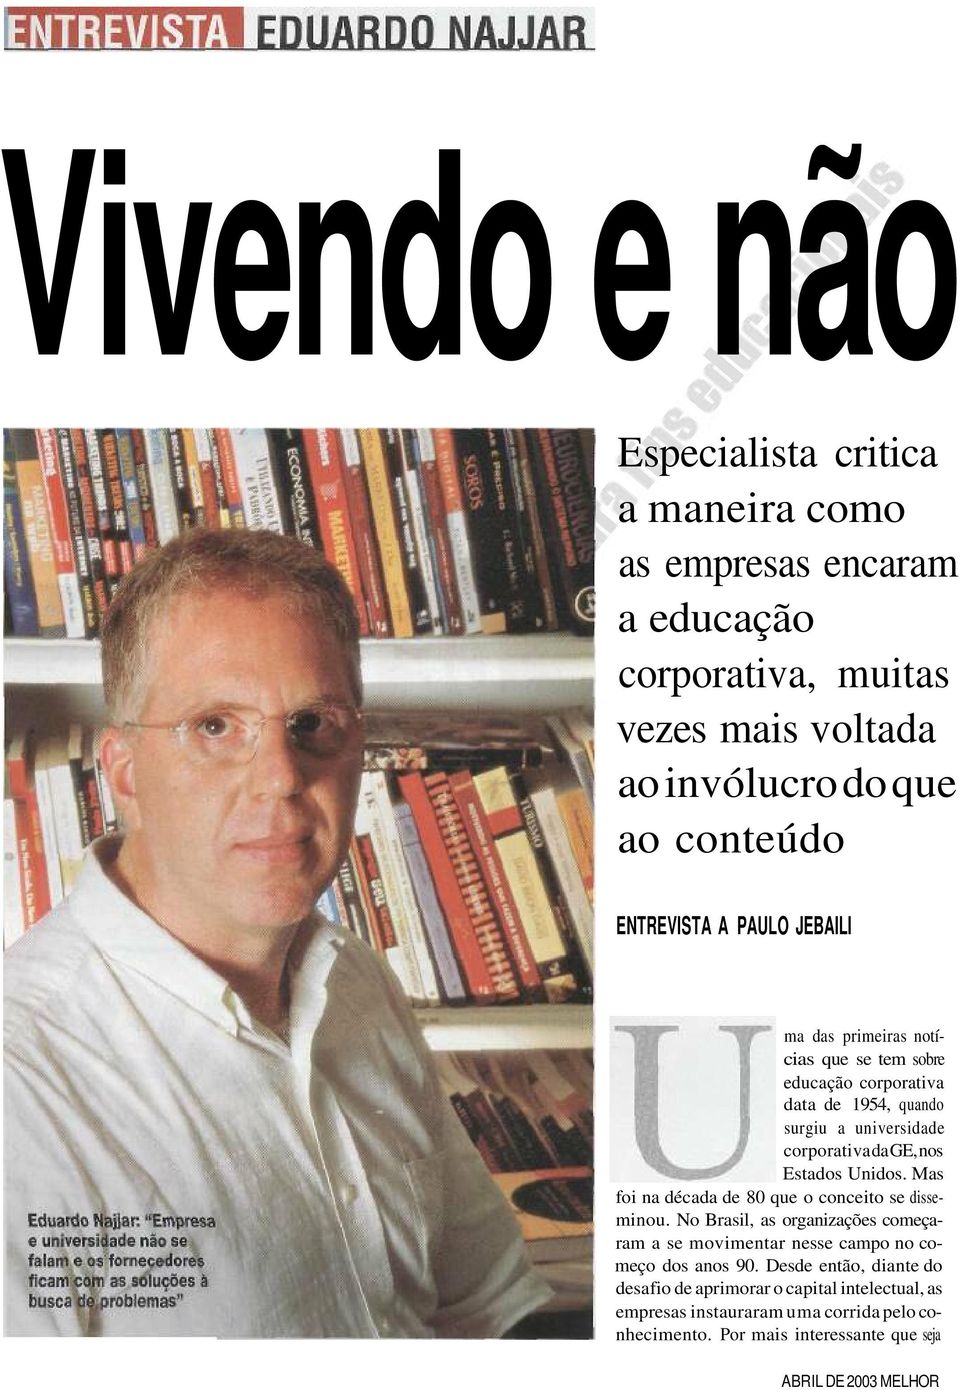 Estados Unidos. Mas foi na década de 80 que o conceito se disseminou. No Brasil, as organizações começaram a se movimentar nesse campo no começo dos anos 90.